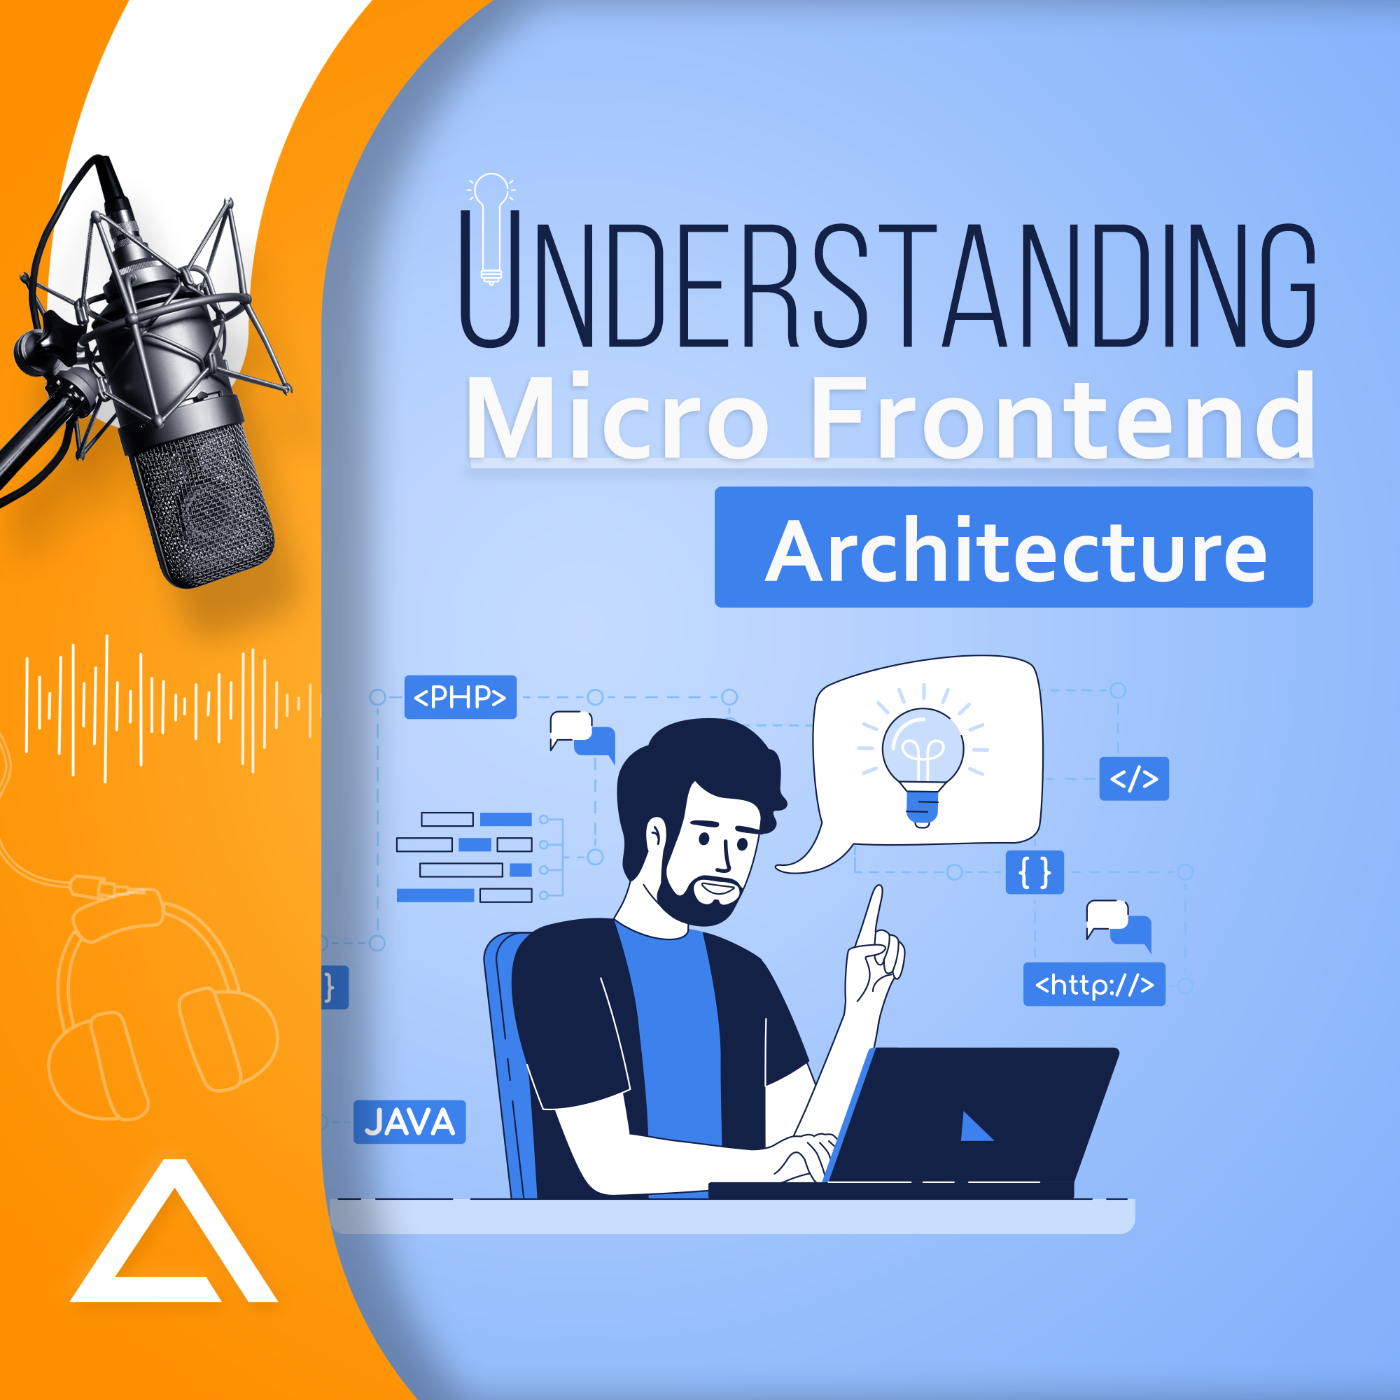 Micro Frontend Architecture 101